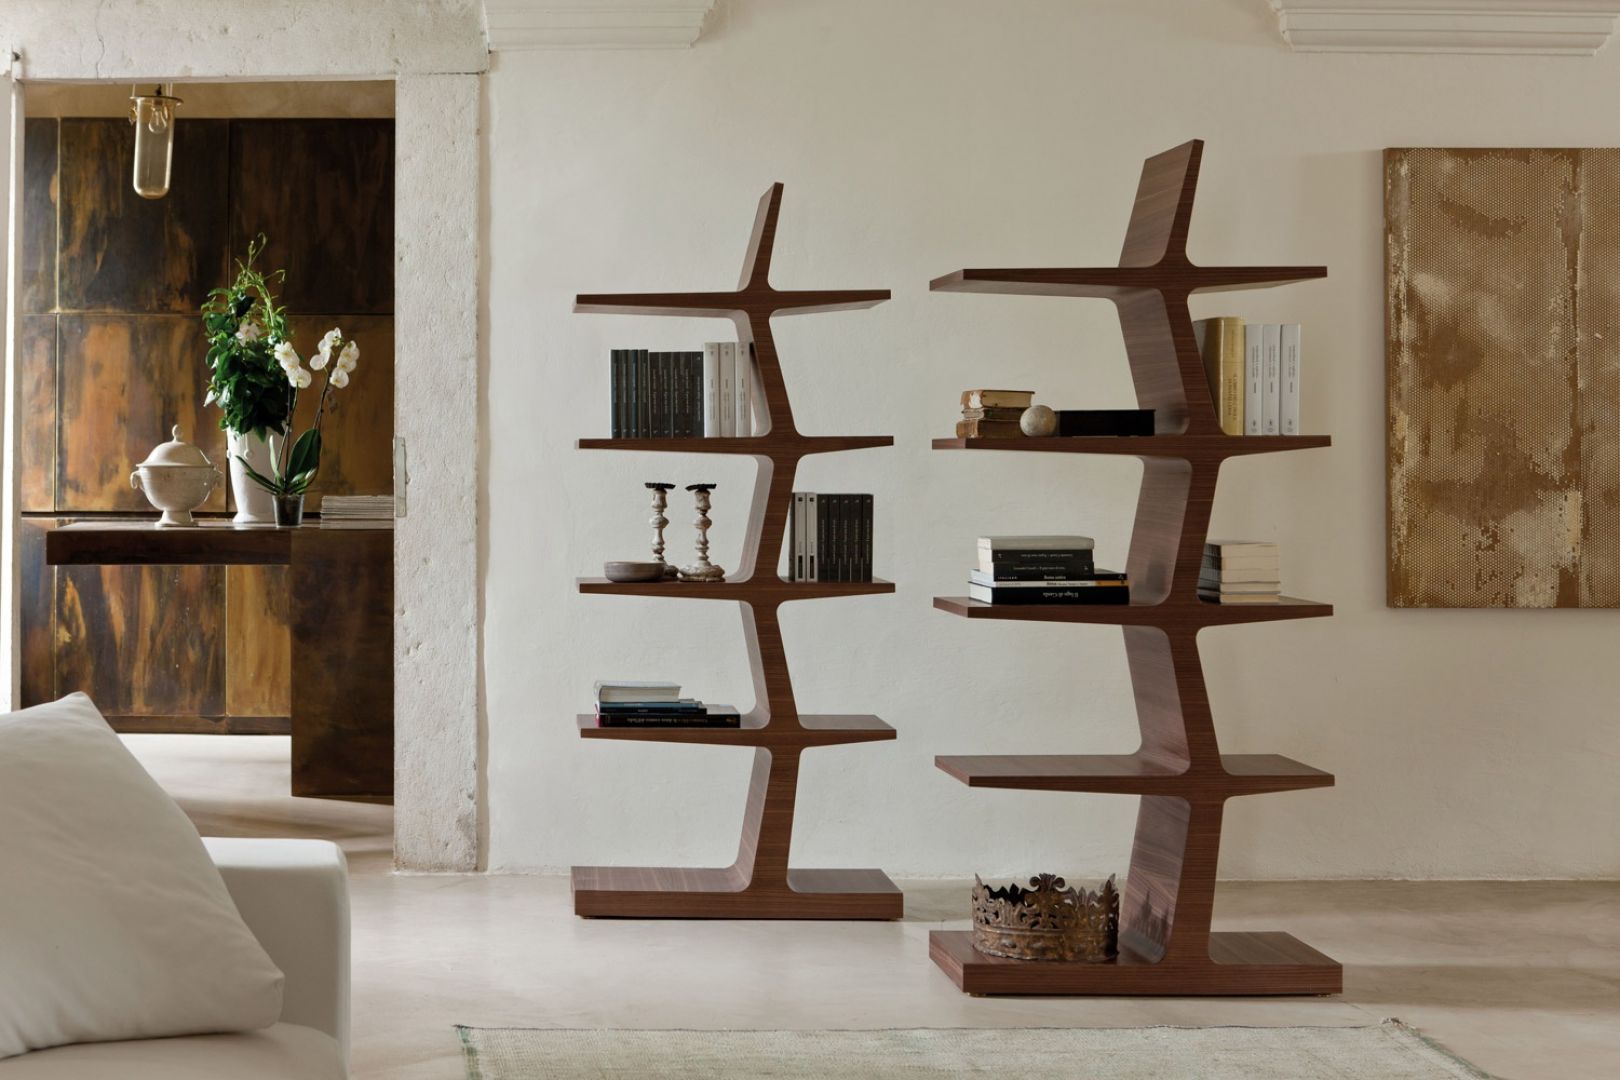 Regał Zeus przypominający kształtem stojące drzewo. To nowoczesna propozycja półki na książki, która jednocześnie, dzięki swojej formie, może być dekoracją salonu. Fot. Porada